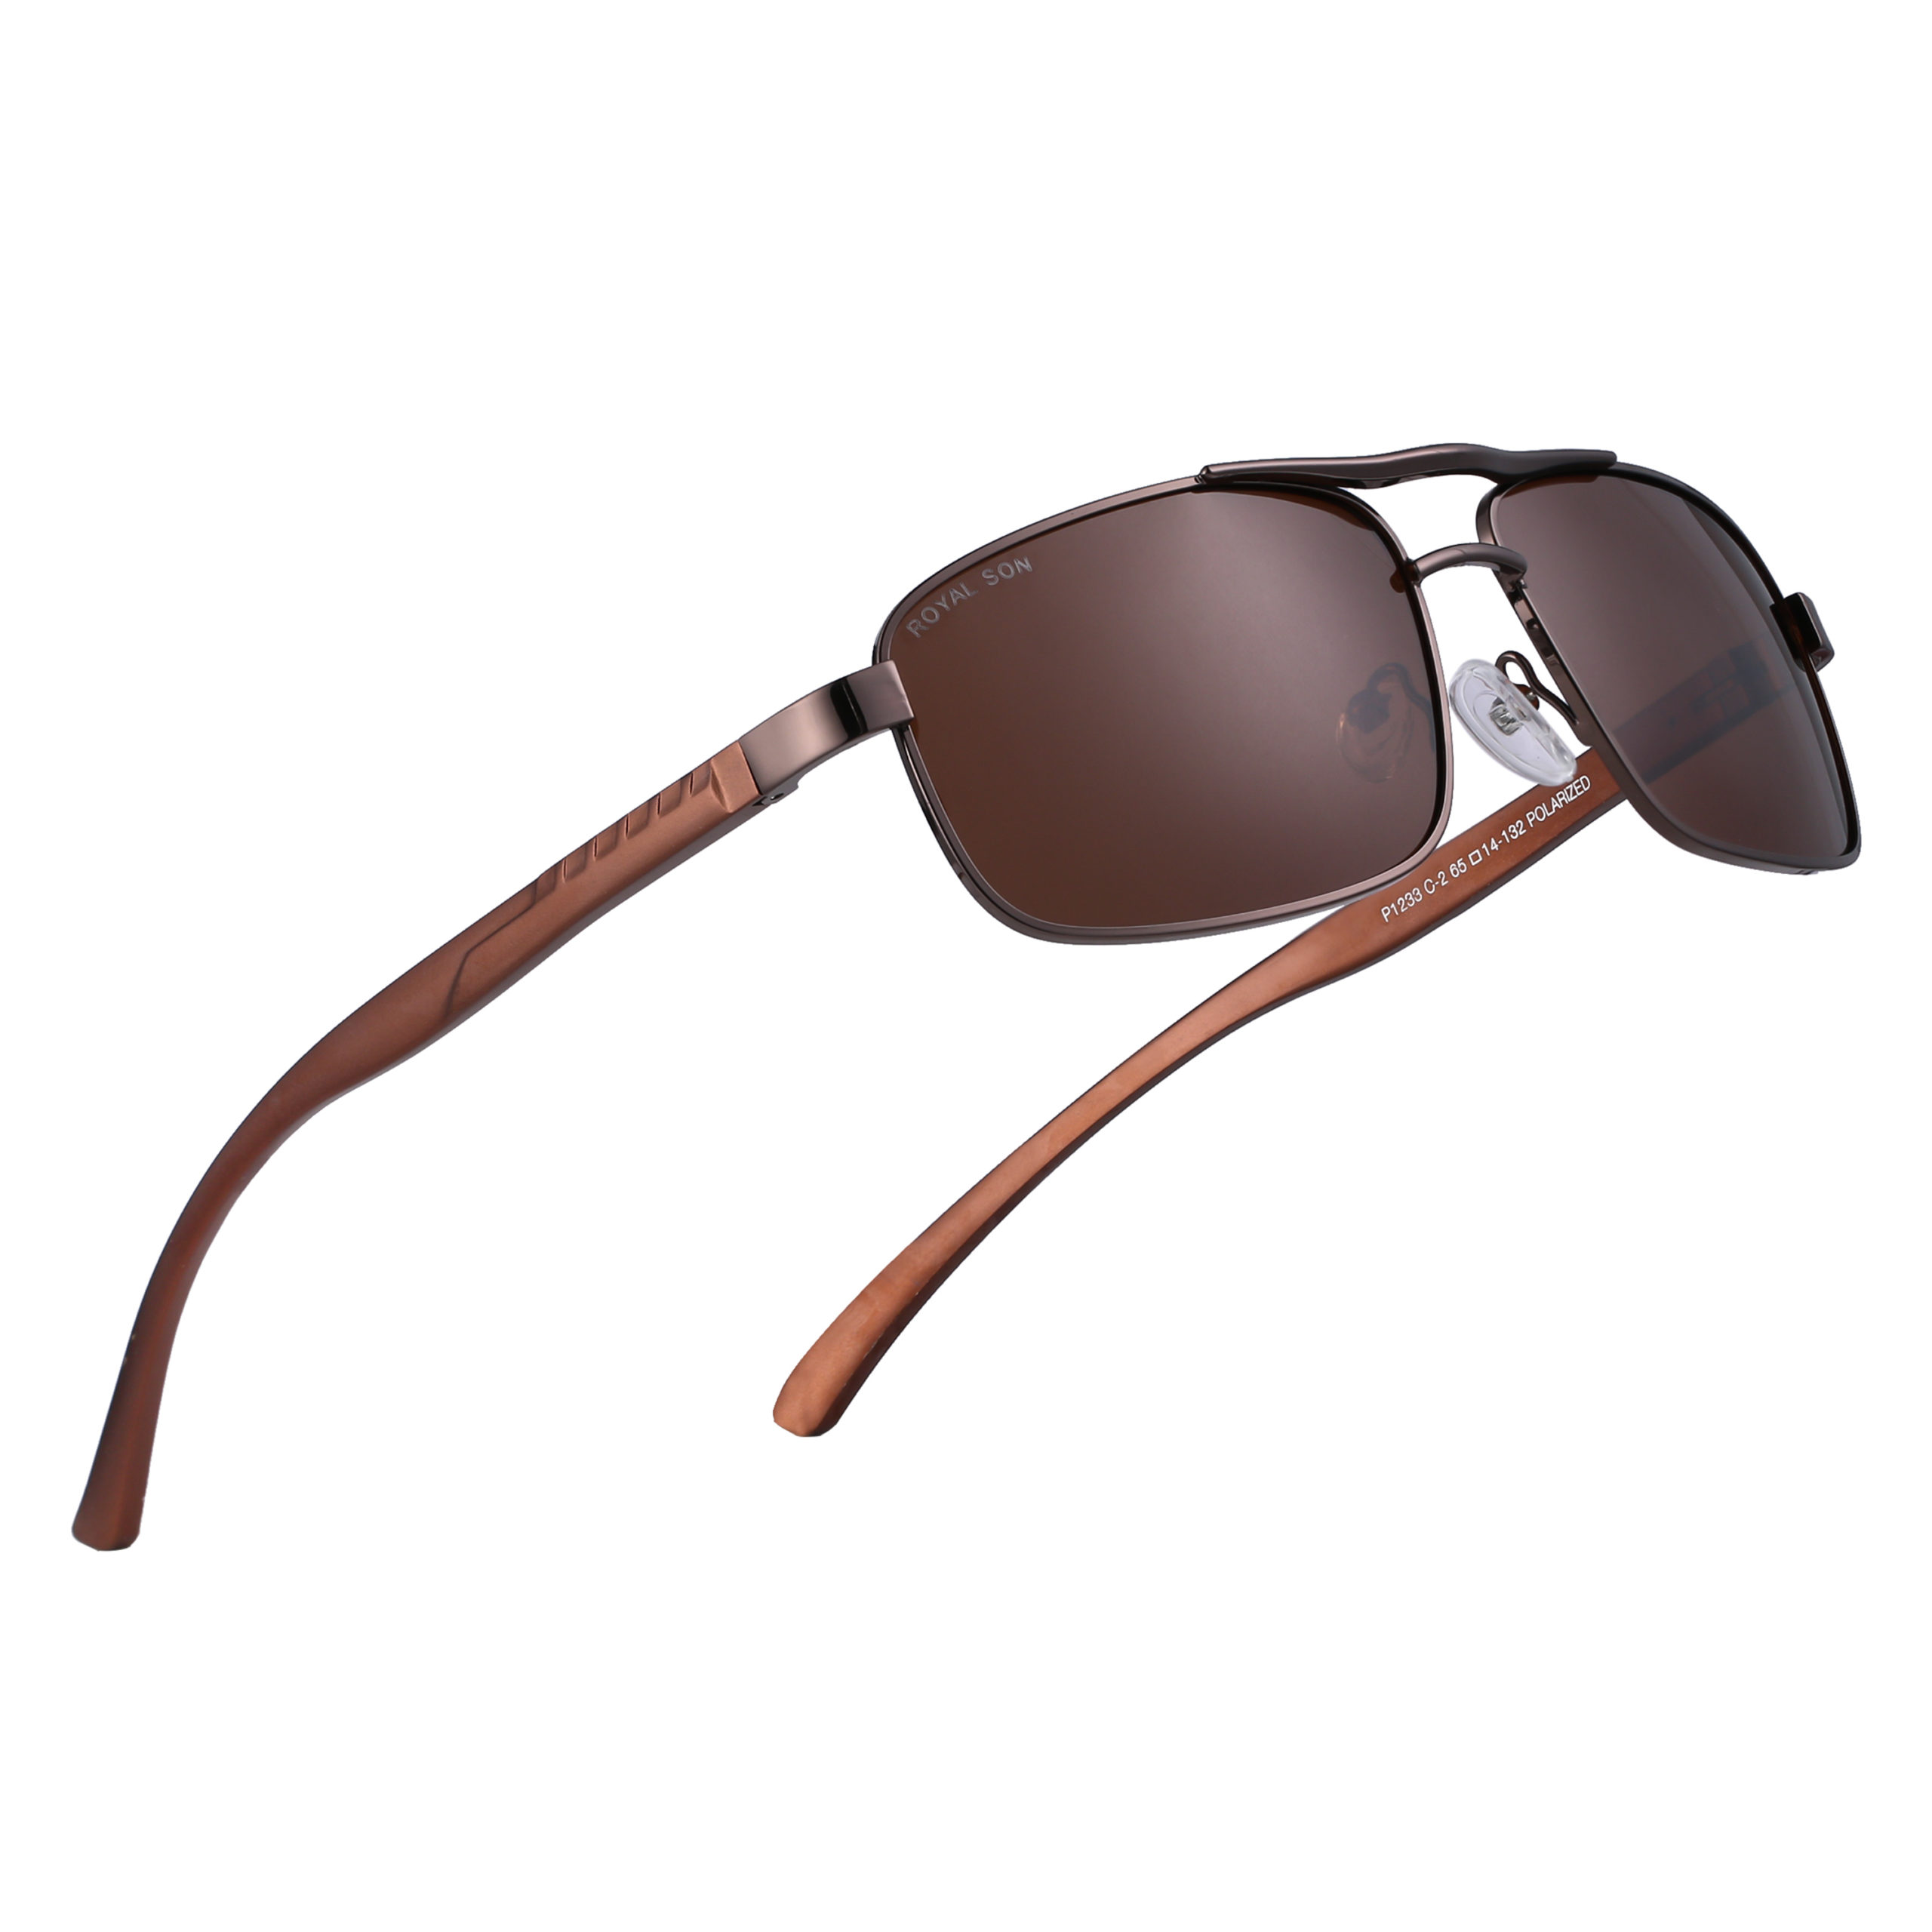 Buy Xpres Brown Color Sunglasses Sports Shape Full Rim Brown Frame Online-lmd.edu.vn